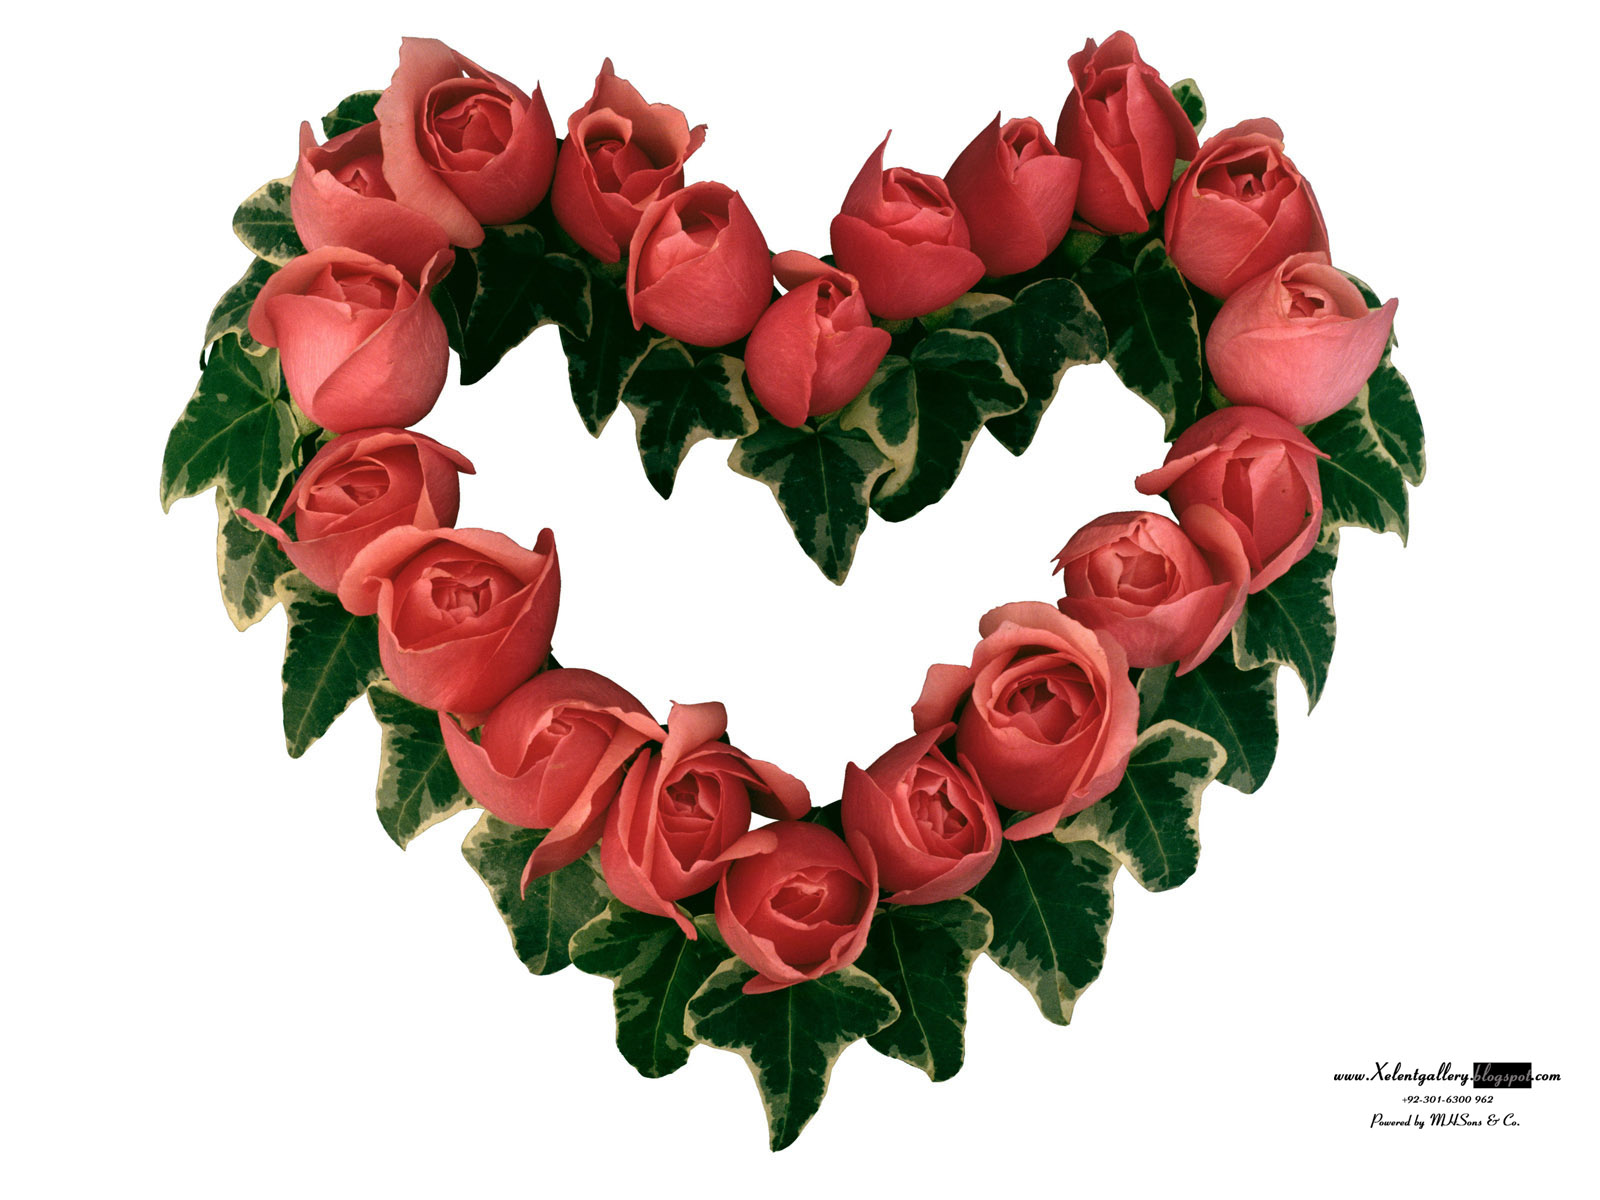 http://1.bp.blogspot.com/-Rxifx572t6s/T_hZWgb7LDI/AAAAAAAAC2I/rlaXOVo9aII/s1600/The-best-top-desktop-roses-wallpapers-hd-rose-wallpaper-white-rose+%252843%2529.jpg